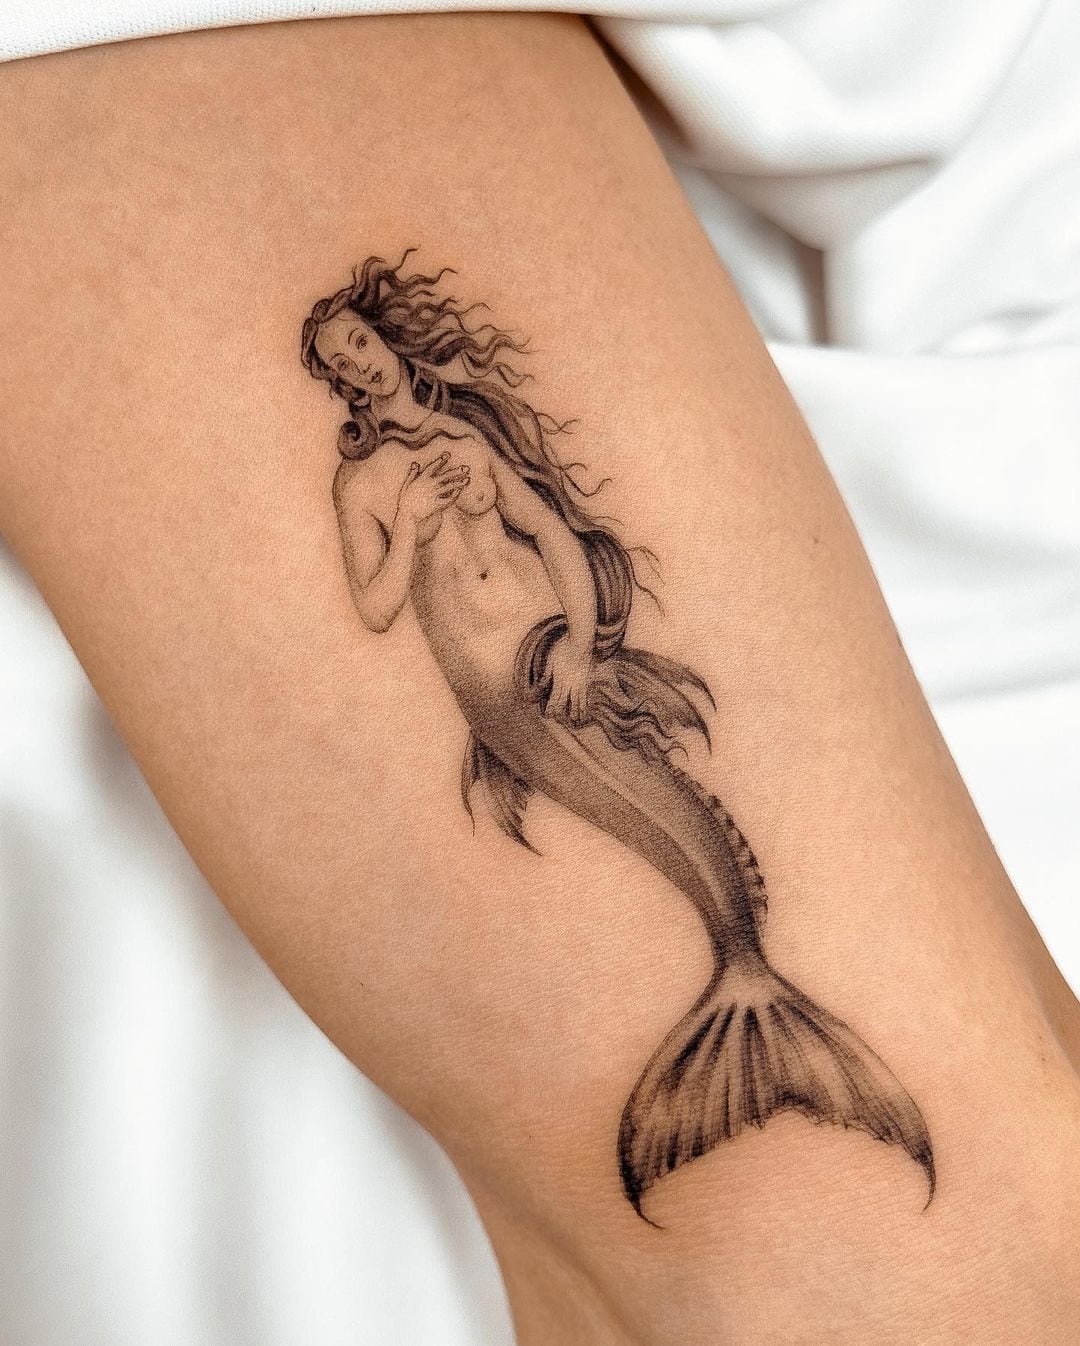 Tattoo uploaded by Jessica Catlin • #mermaidtattoo #mermaid #minimalist  #outline #simple • Tattoodo